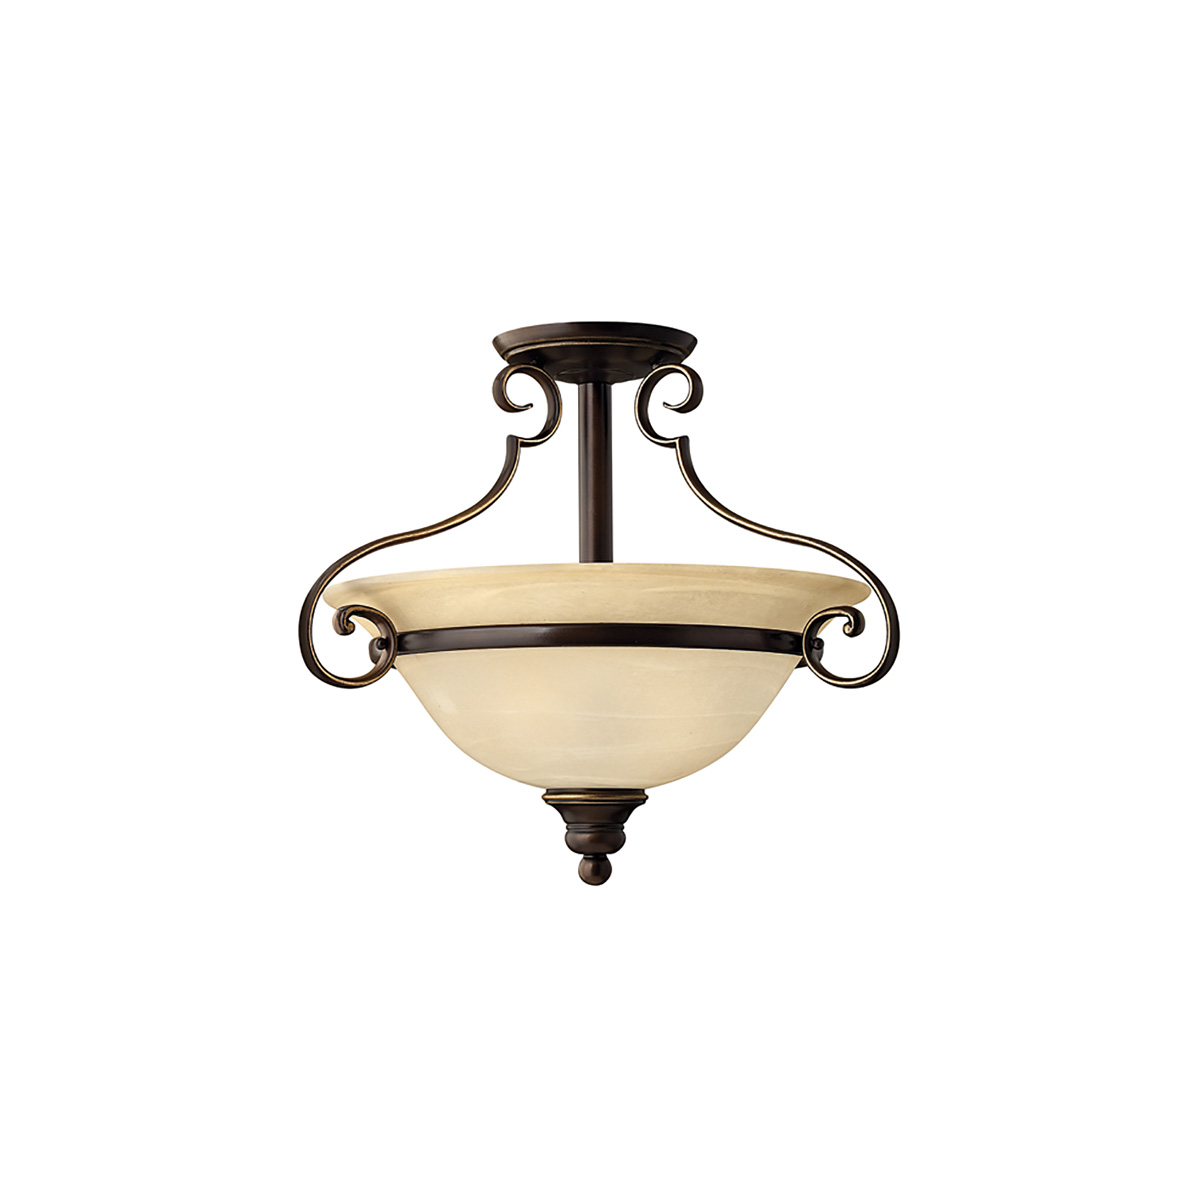 Потолочный светильник HK-CELLO-SF, Потолочные светильники Неоклассический | Бронза античная | Прихожая, спальня, гостиная, столовая.